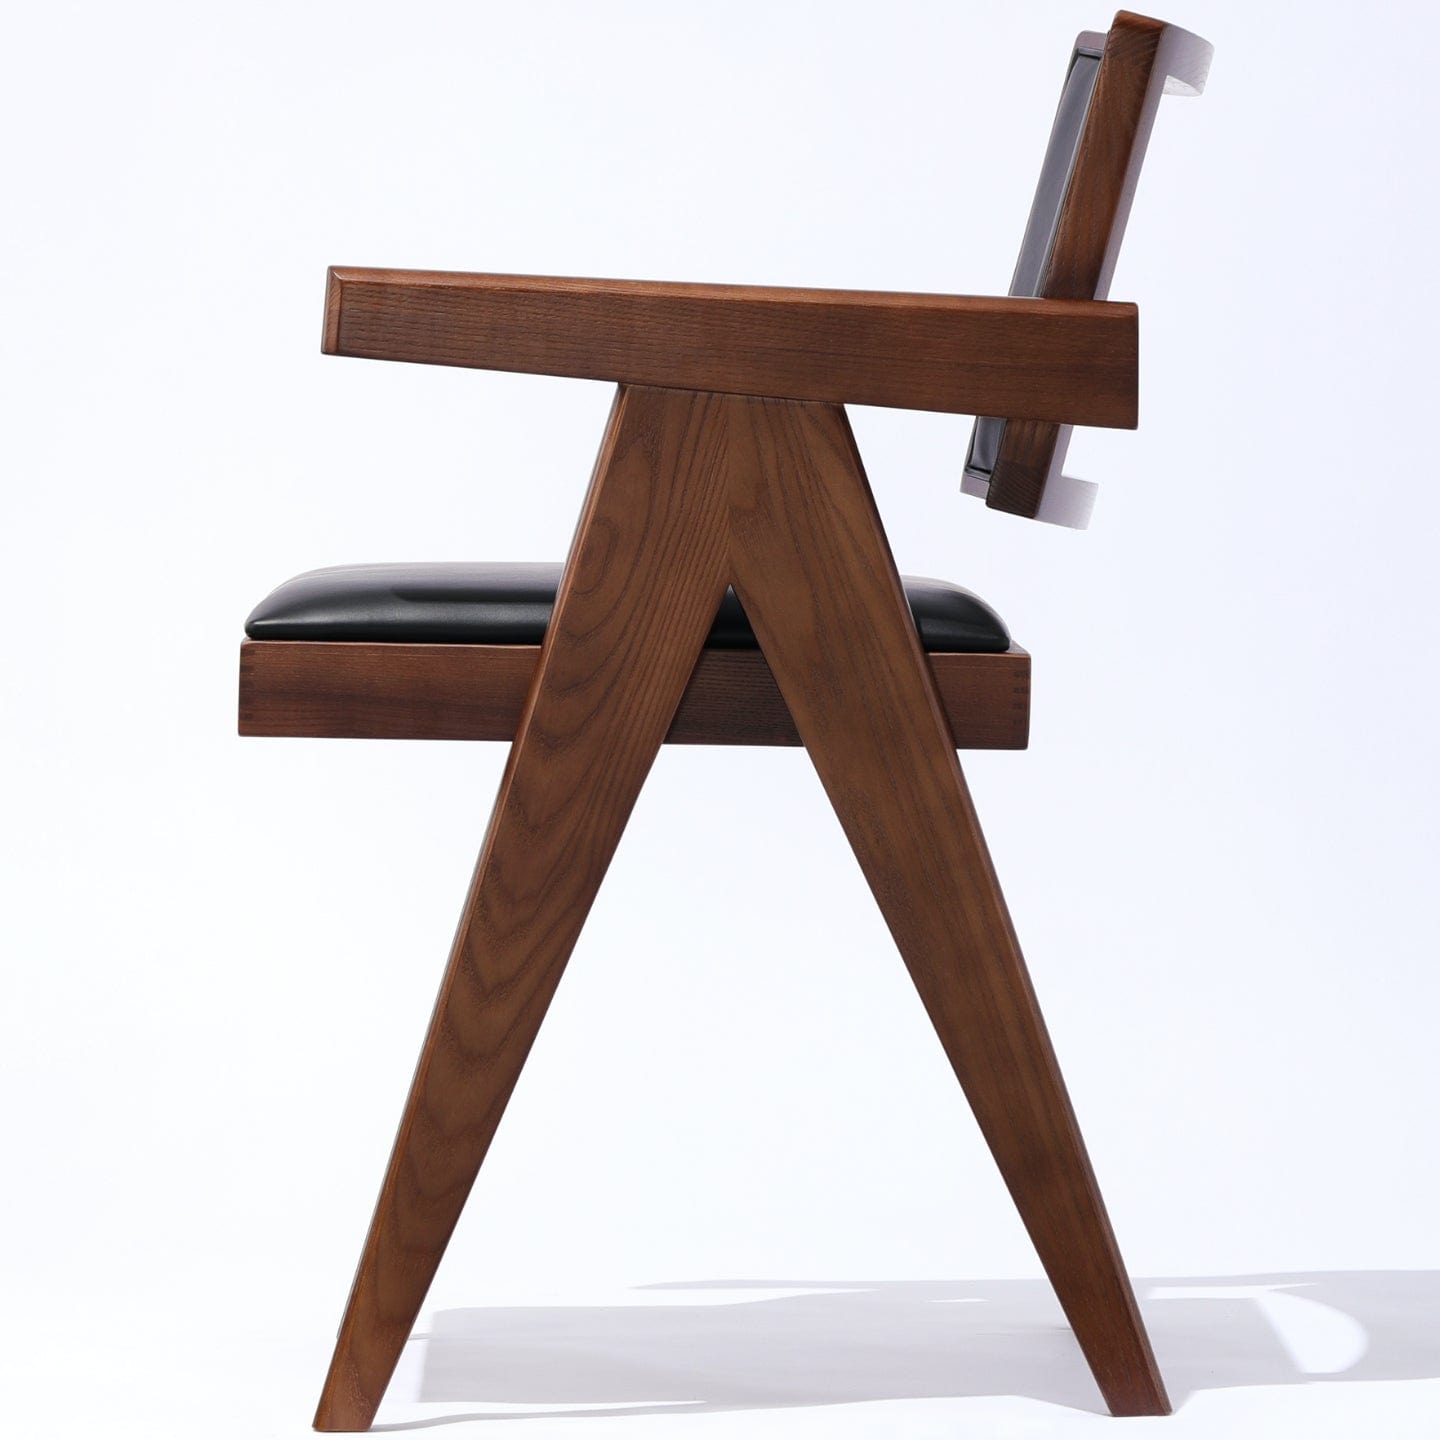 Soho Concept pierre-j-arm-chair-upholstered-noyer-wood-base-faux-cuir-seat-chaise-de-salle-à-manger-en-noir